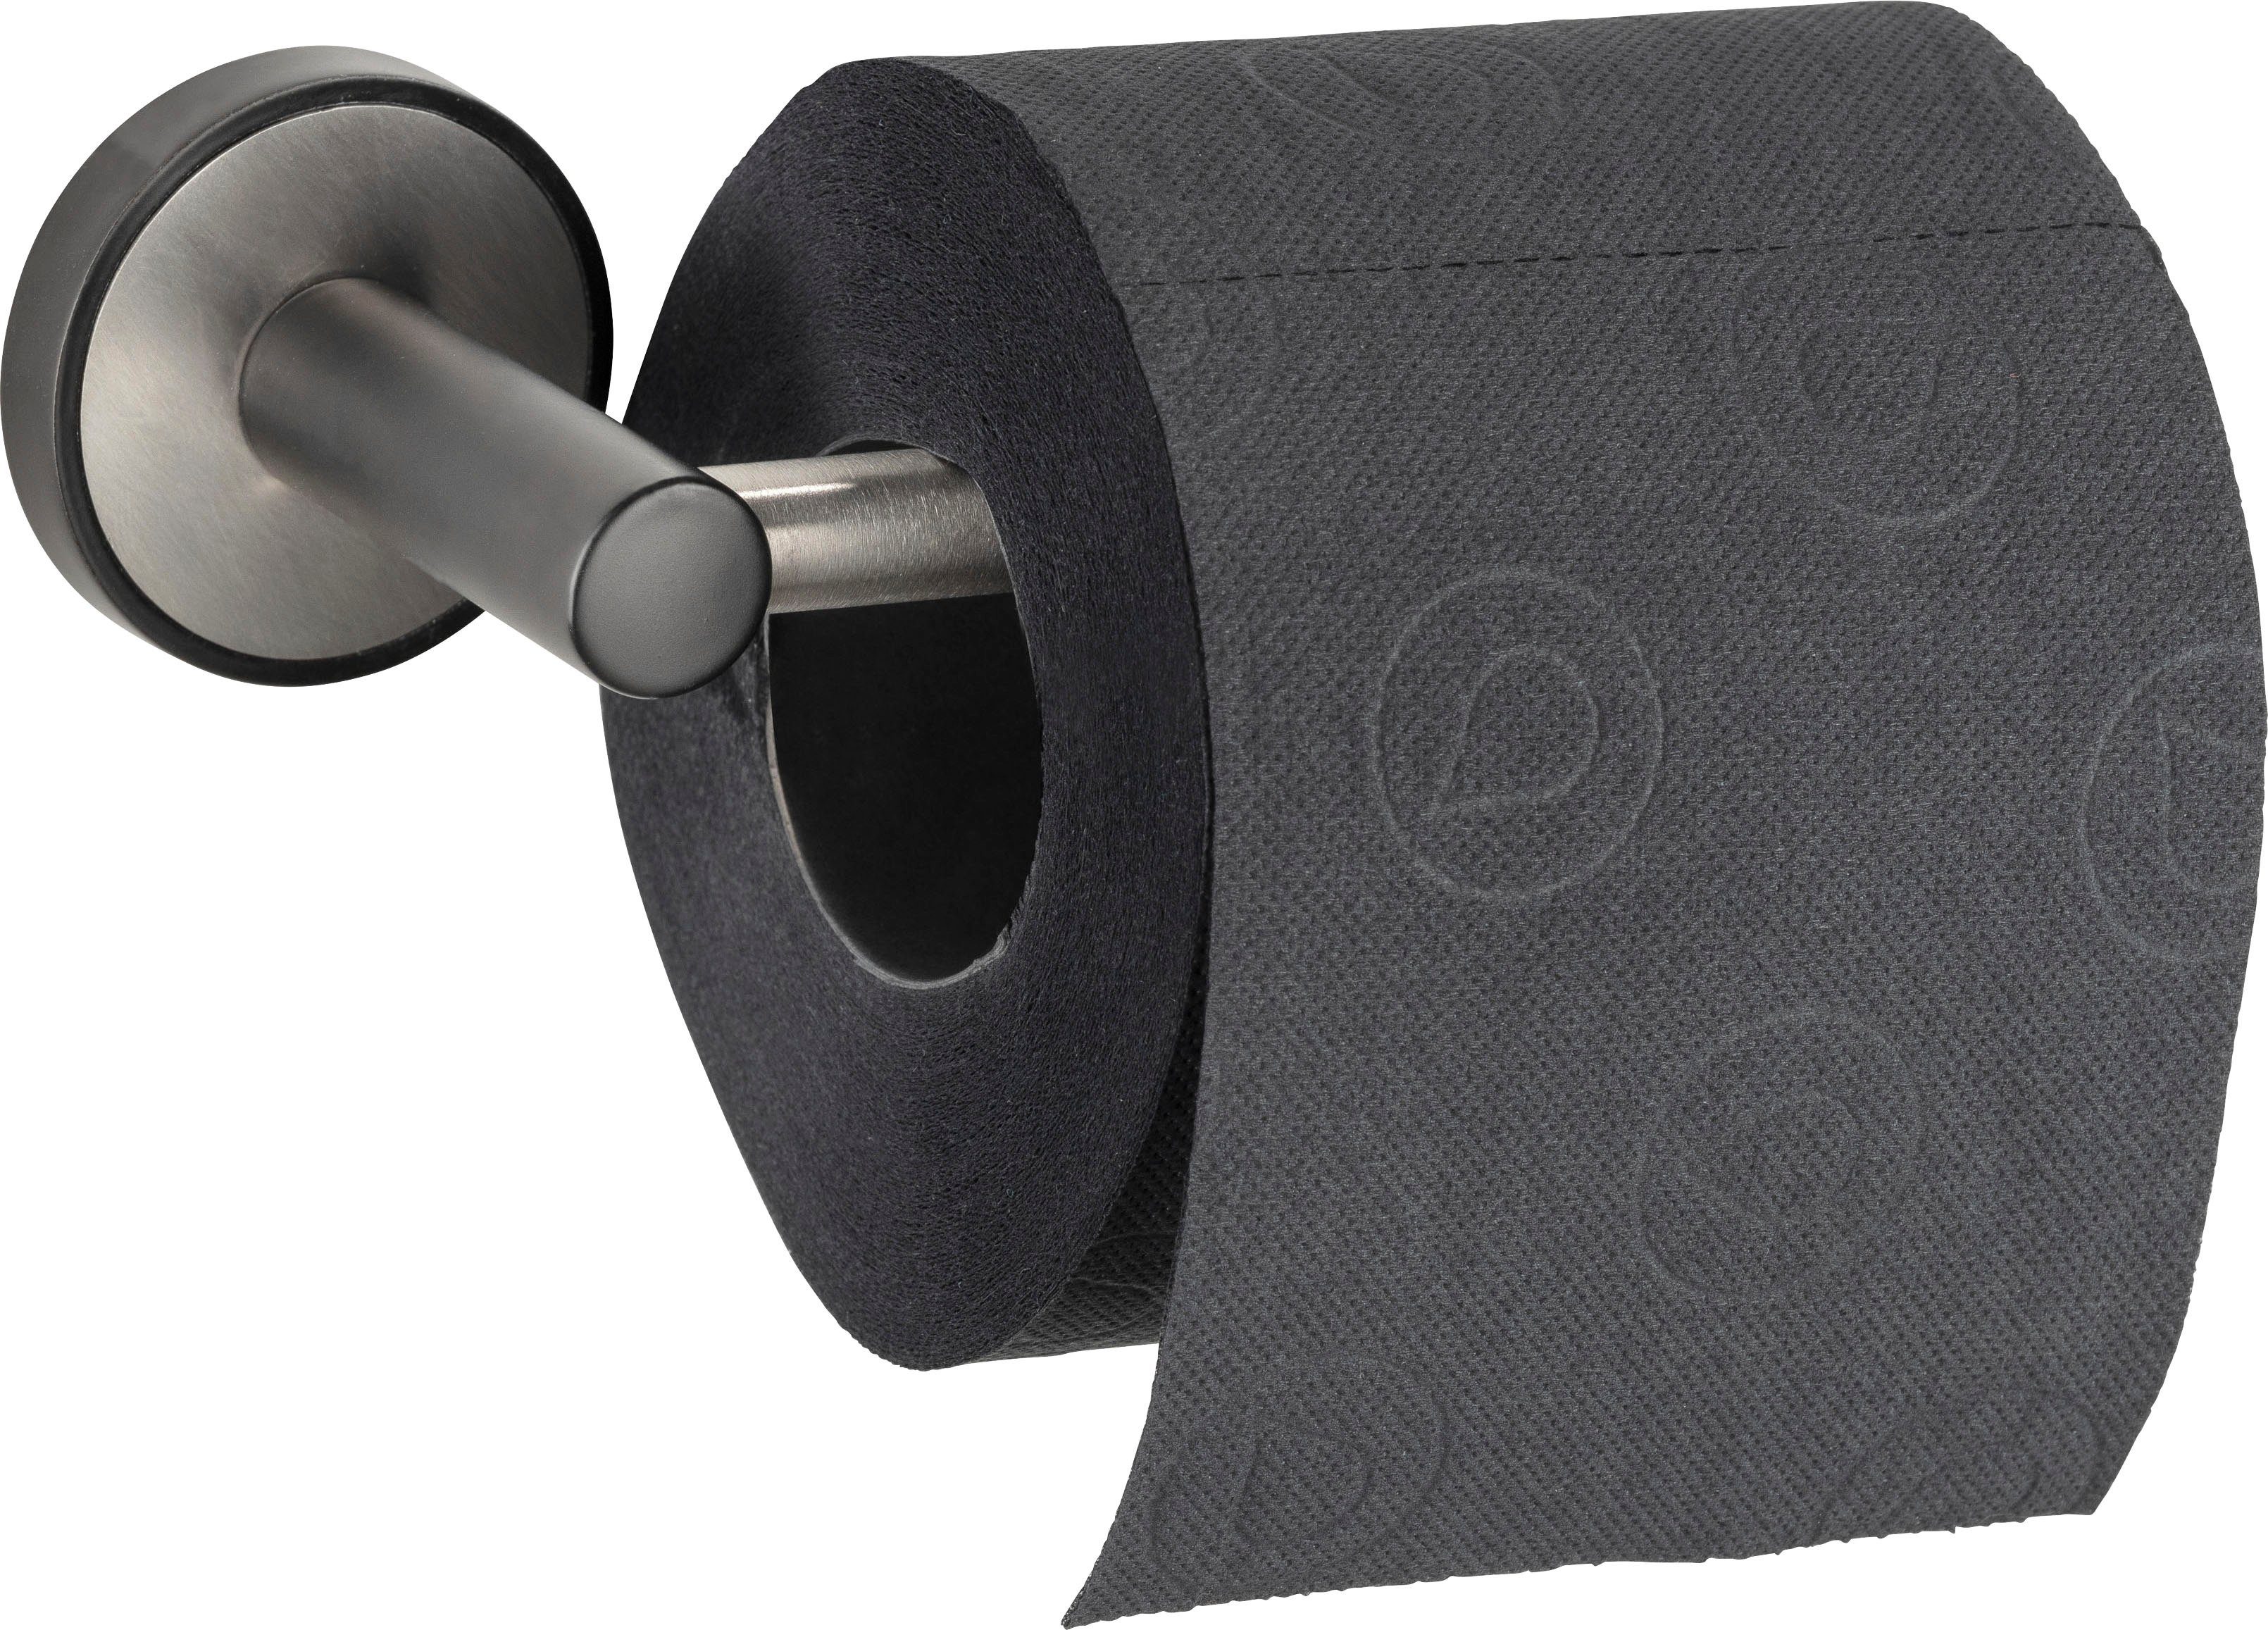 UV-Loc® ohne WENKO Toilettenpapierhalter Udine, Befestigen Bohren